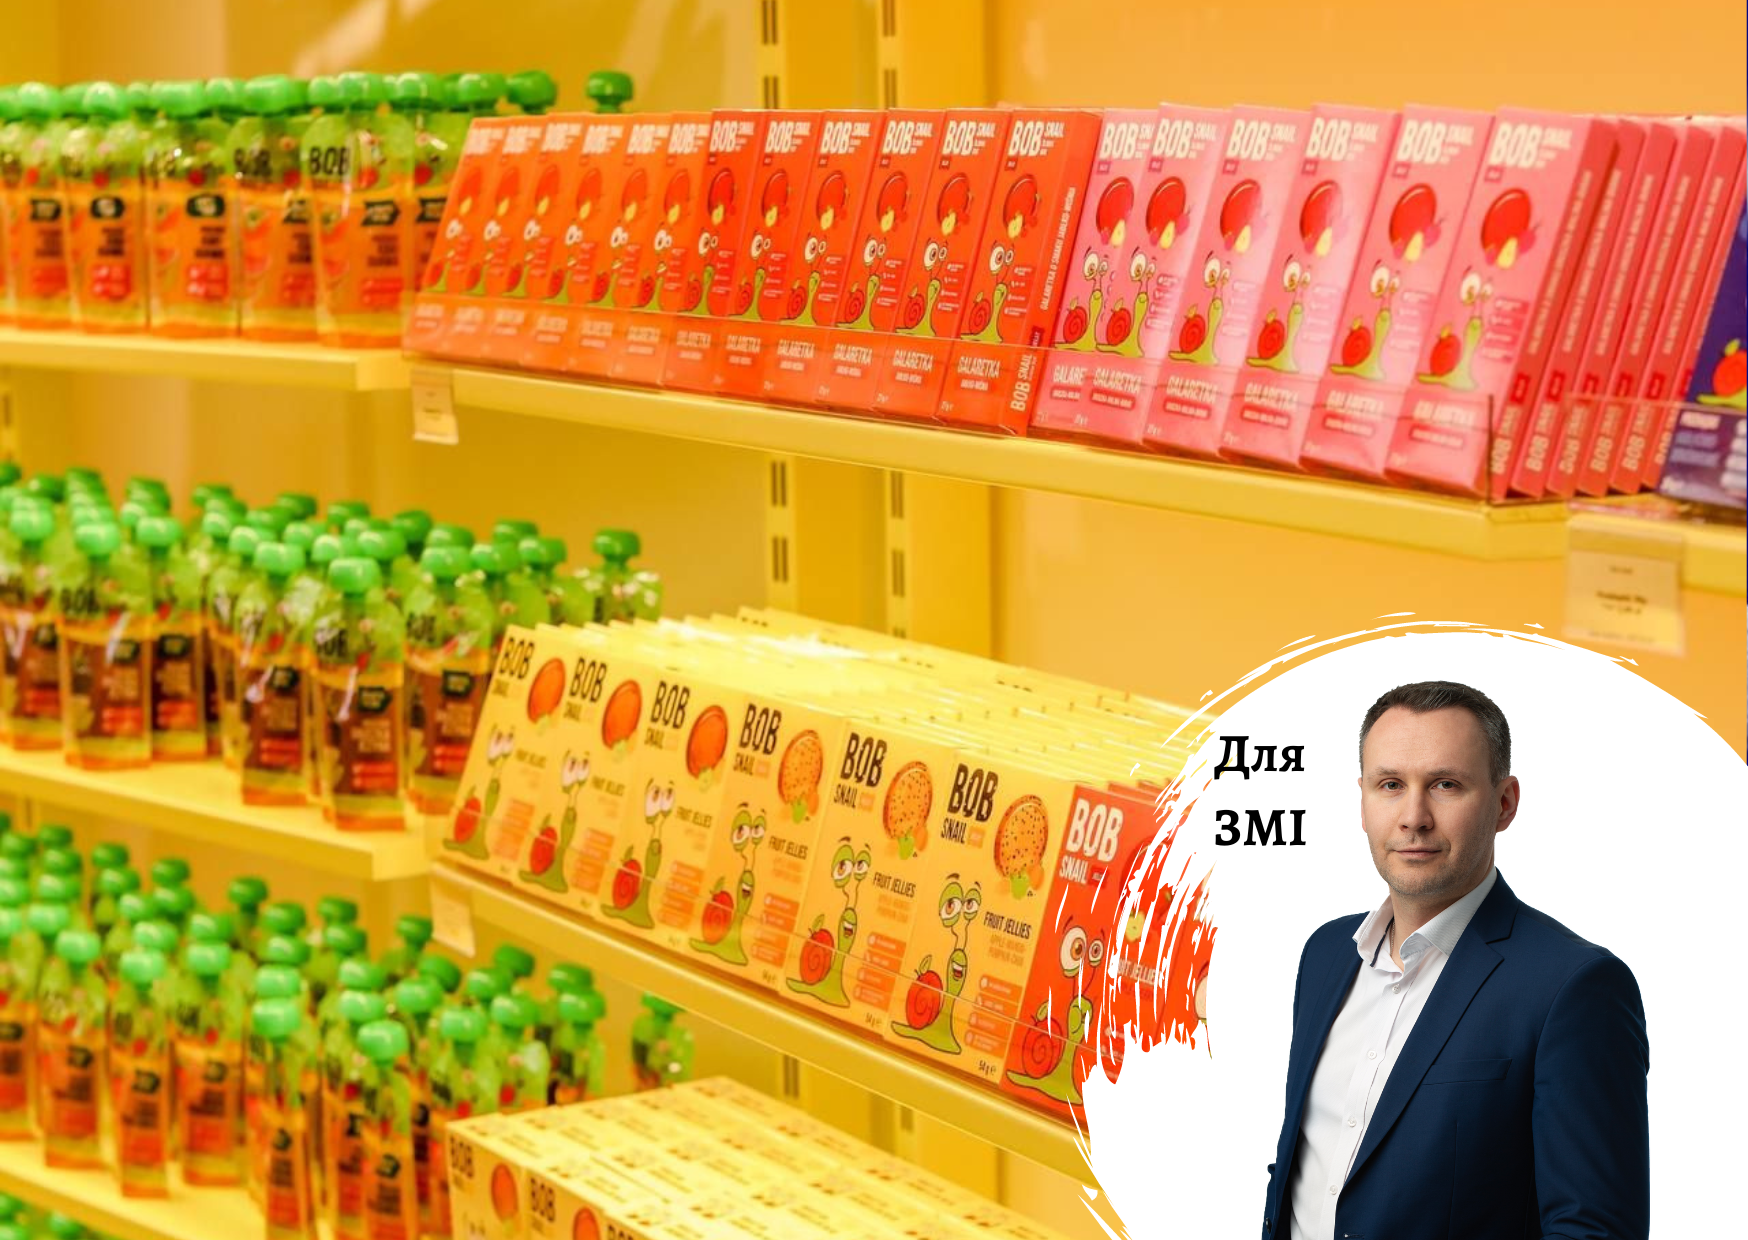 Історія виробника солодощів Bob Snail – коментарі по ринку від гендиректора Pro-Consulting Олександра Соколова. FORBES